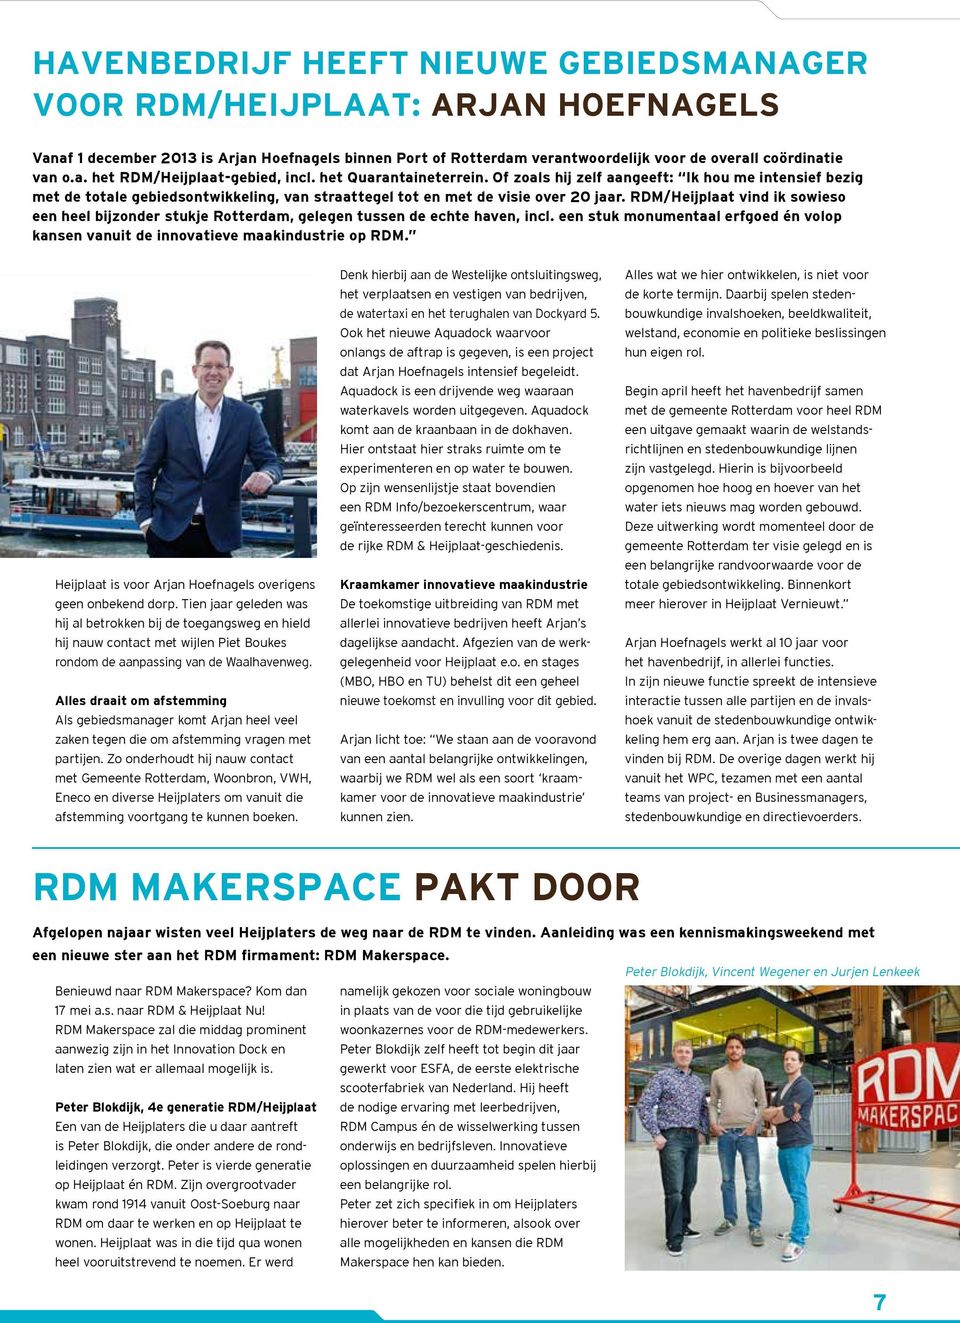 RDM/Heijplaat vind ik sowieso een heel bijzonder stukje Rotterdam, gelegen tussen de echte haven, incl. een stuk monumentaal erfgoed én volop kansen vanuit de innovatieve maakindustrie op RDM.